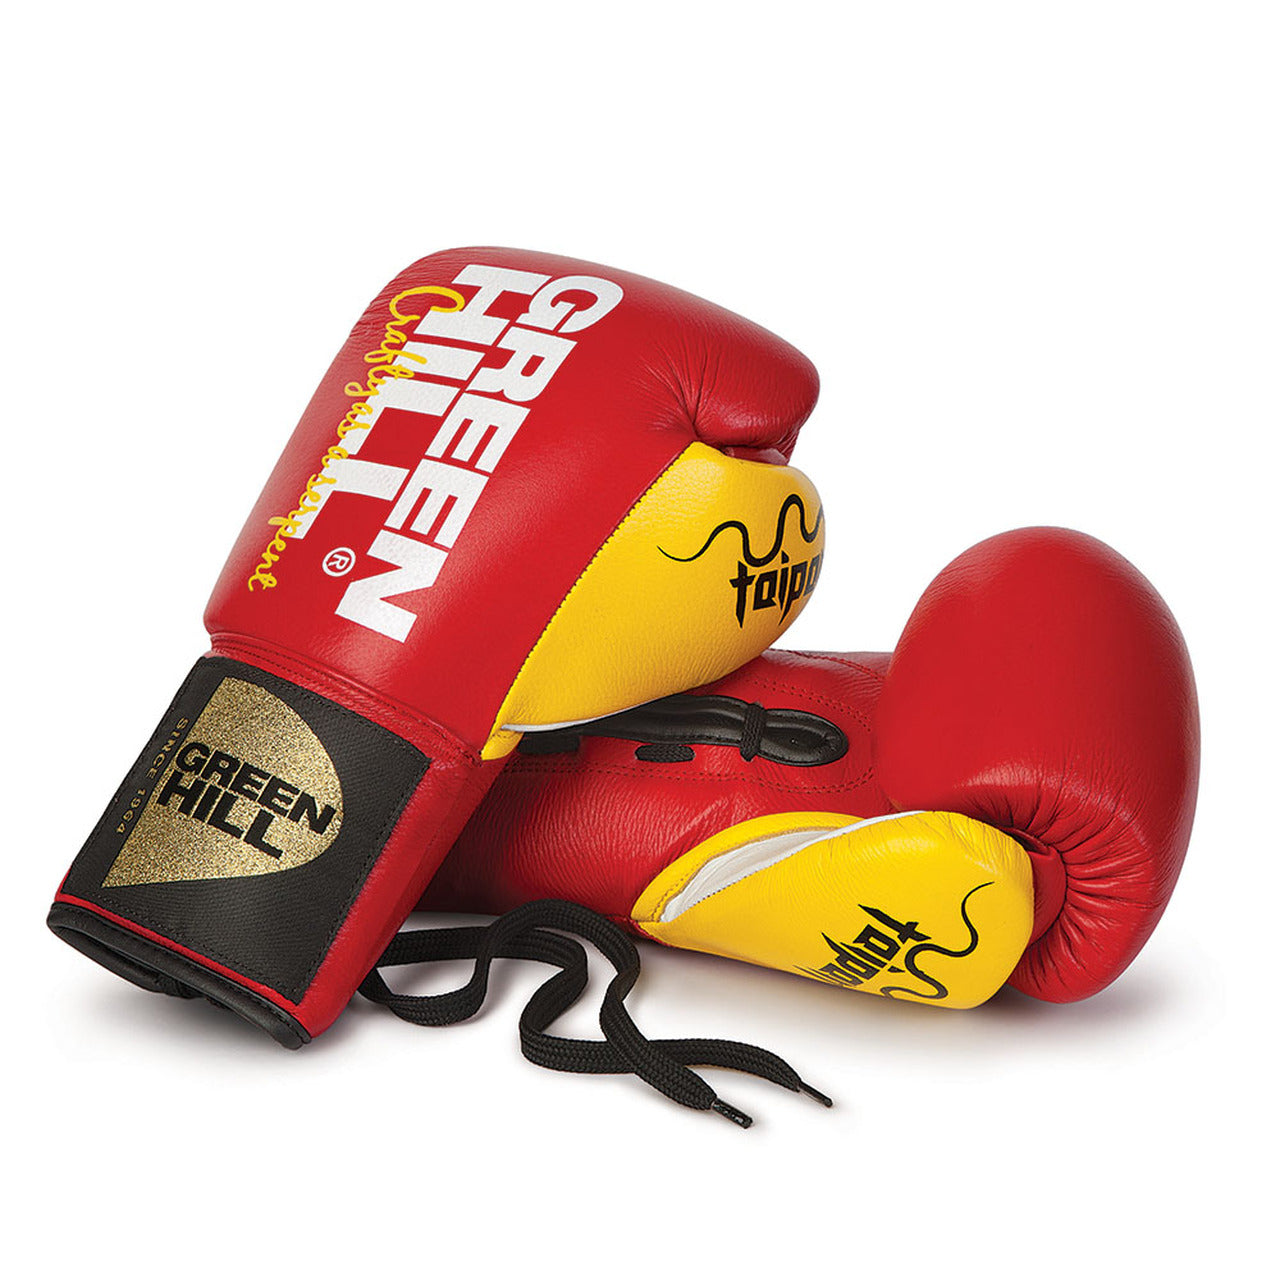 Boxing Gloves “TAIPAN”